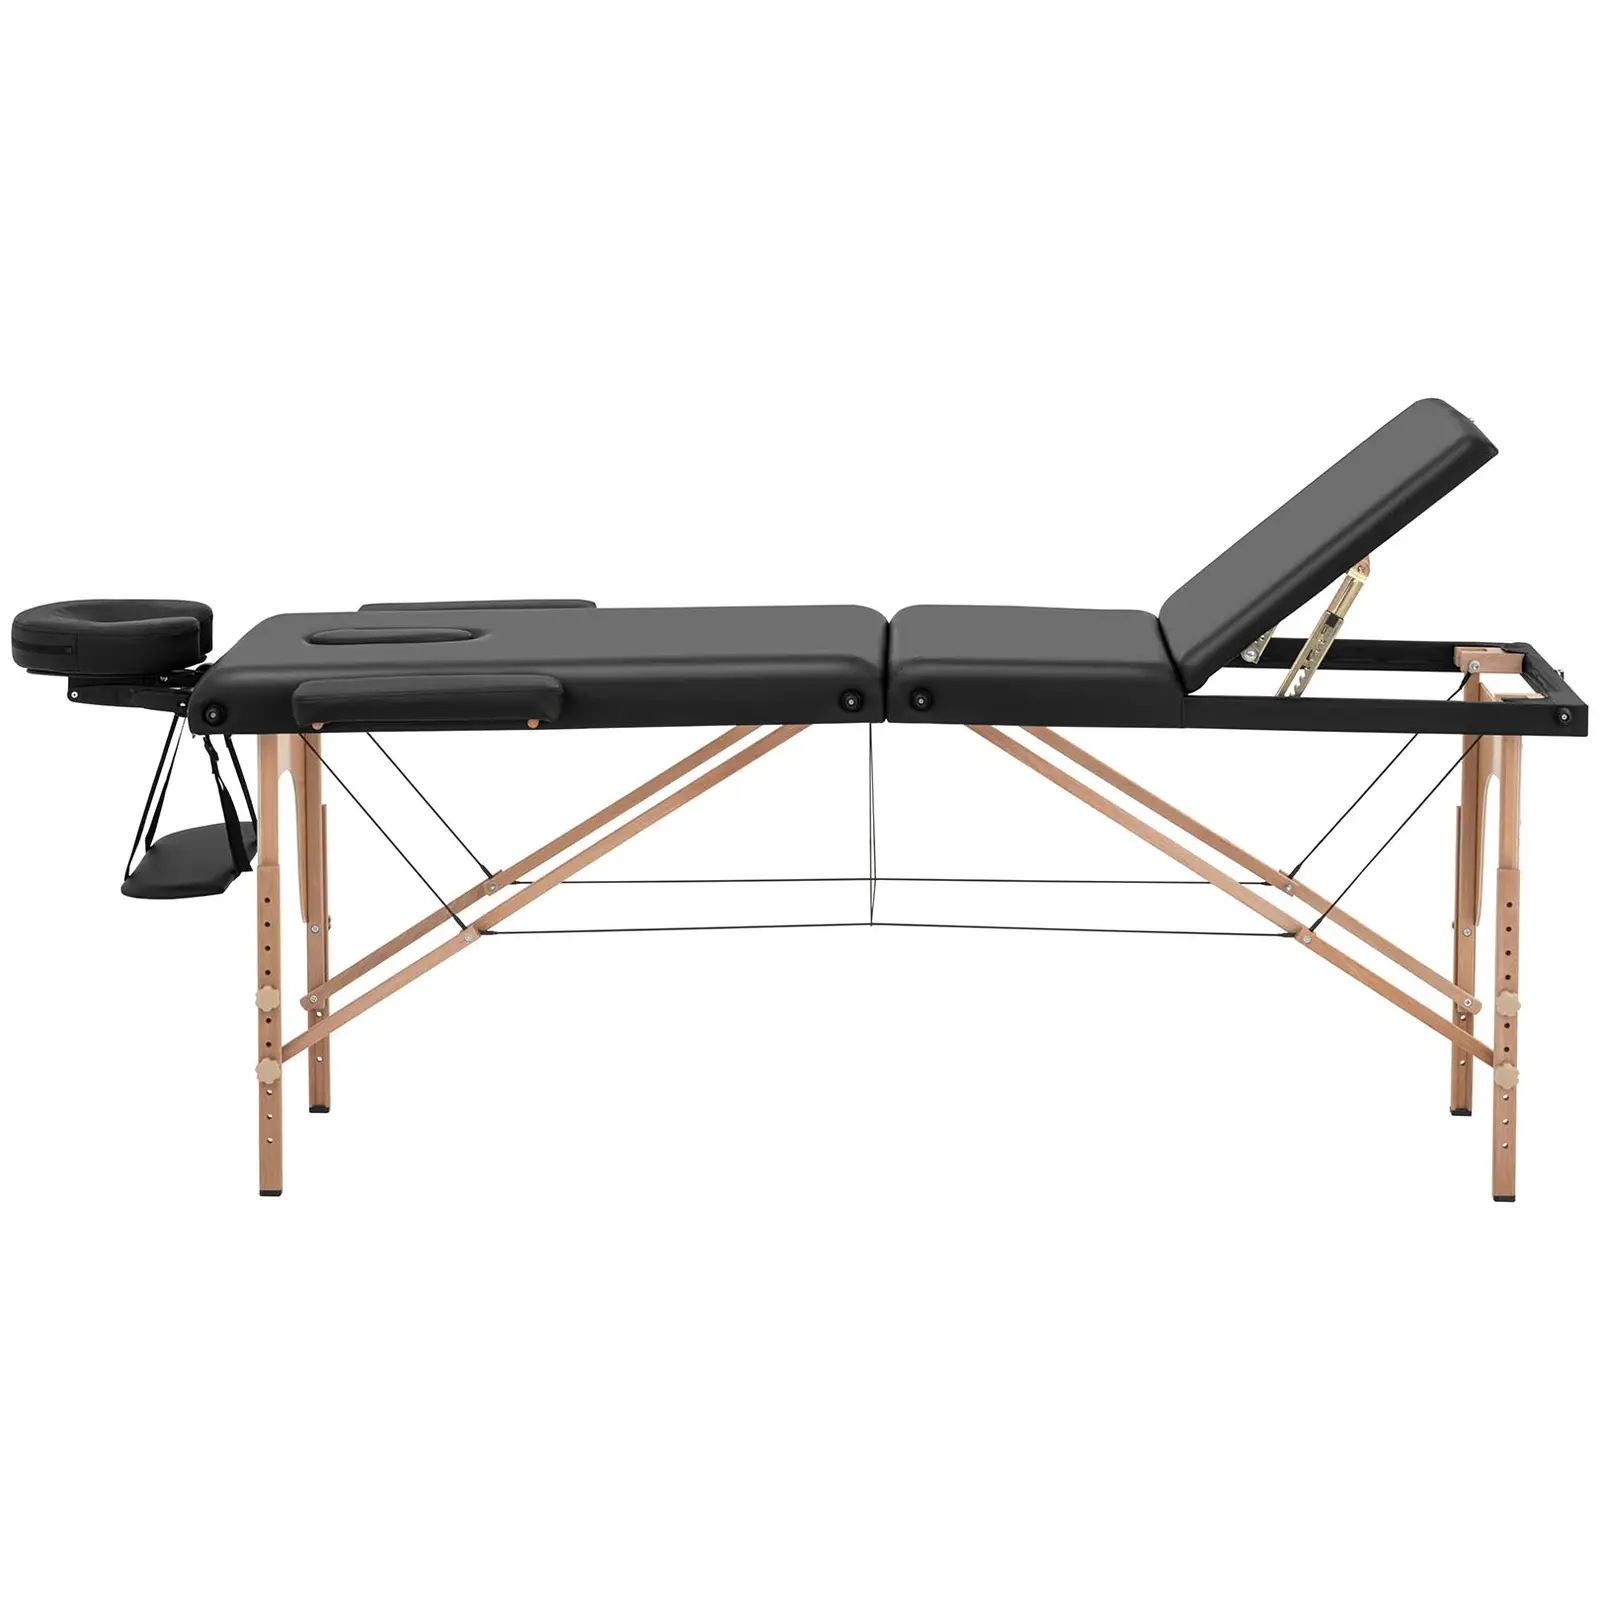 Cama de massagem - portátil - 185 x 60 x 62 cm - 227 kg - Preto